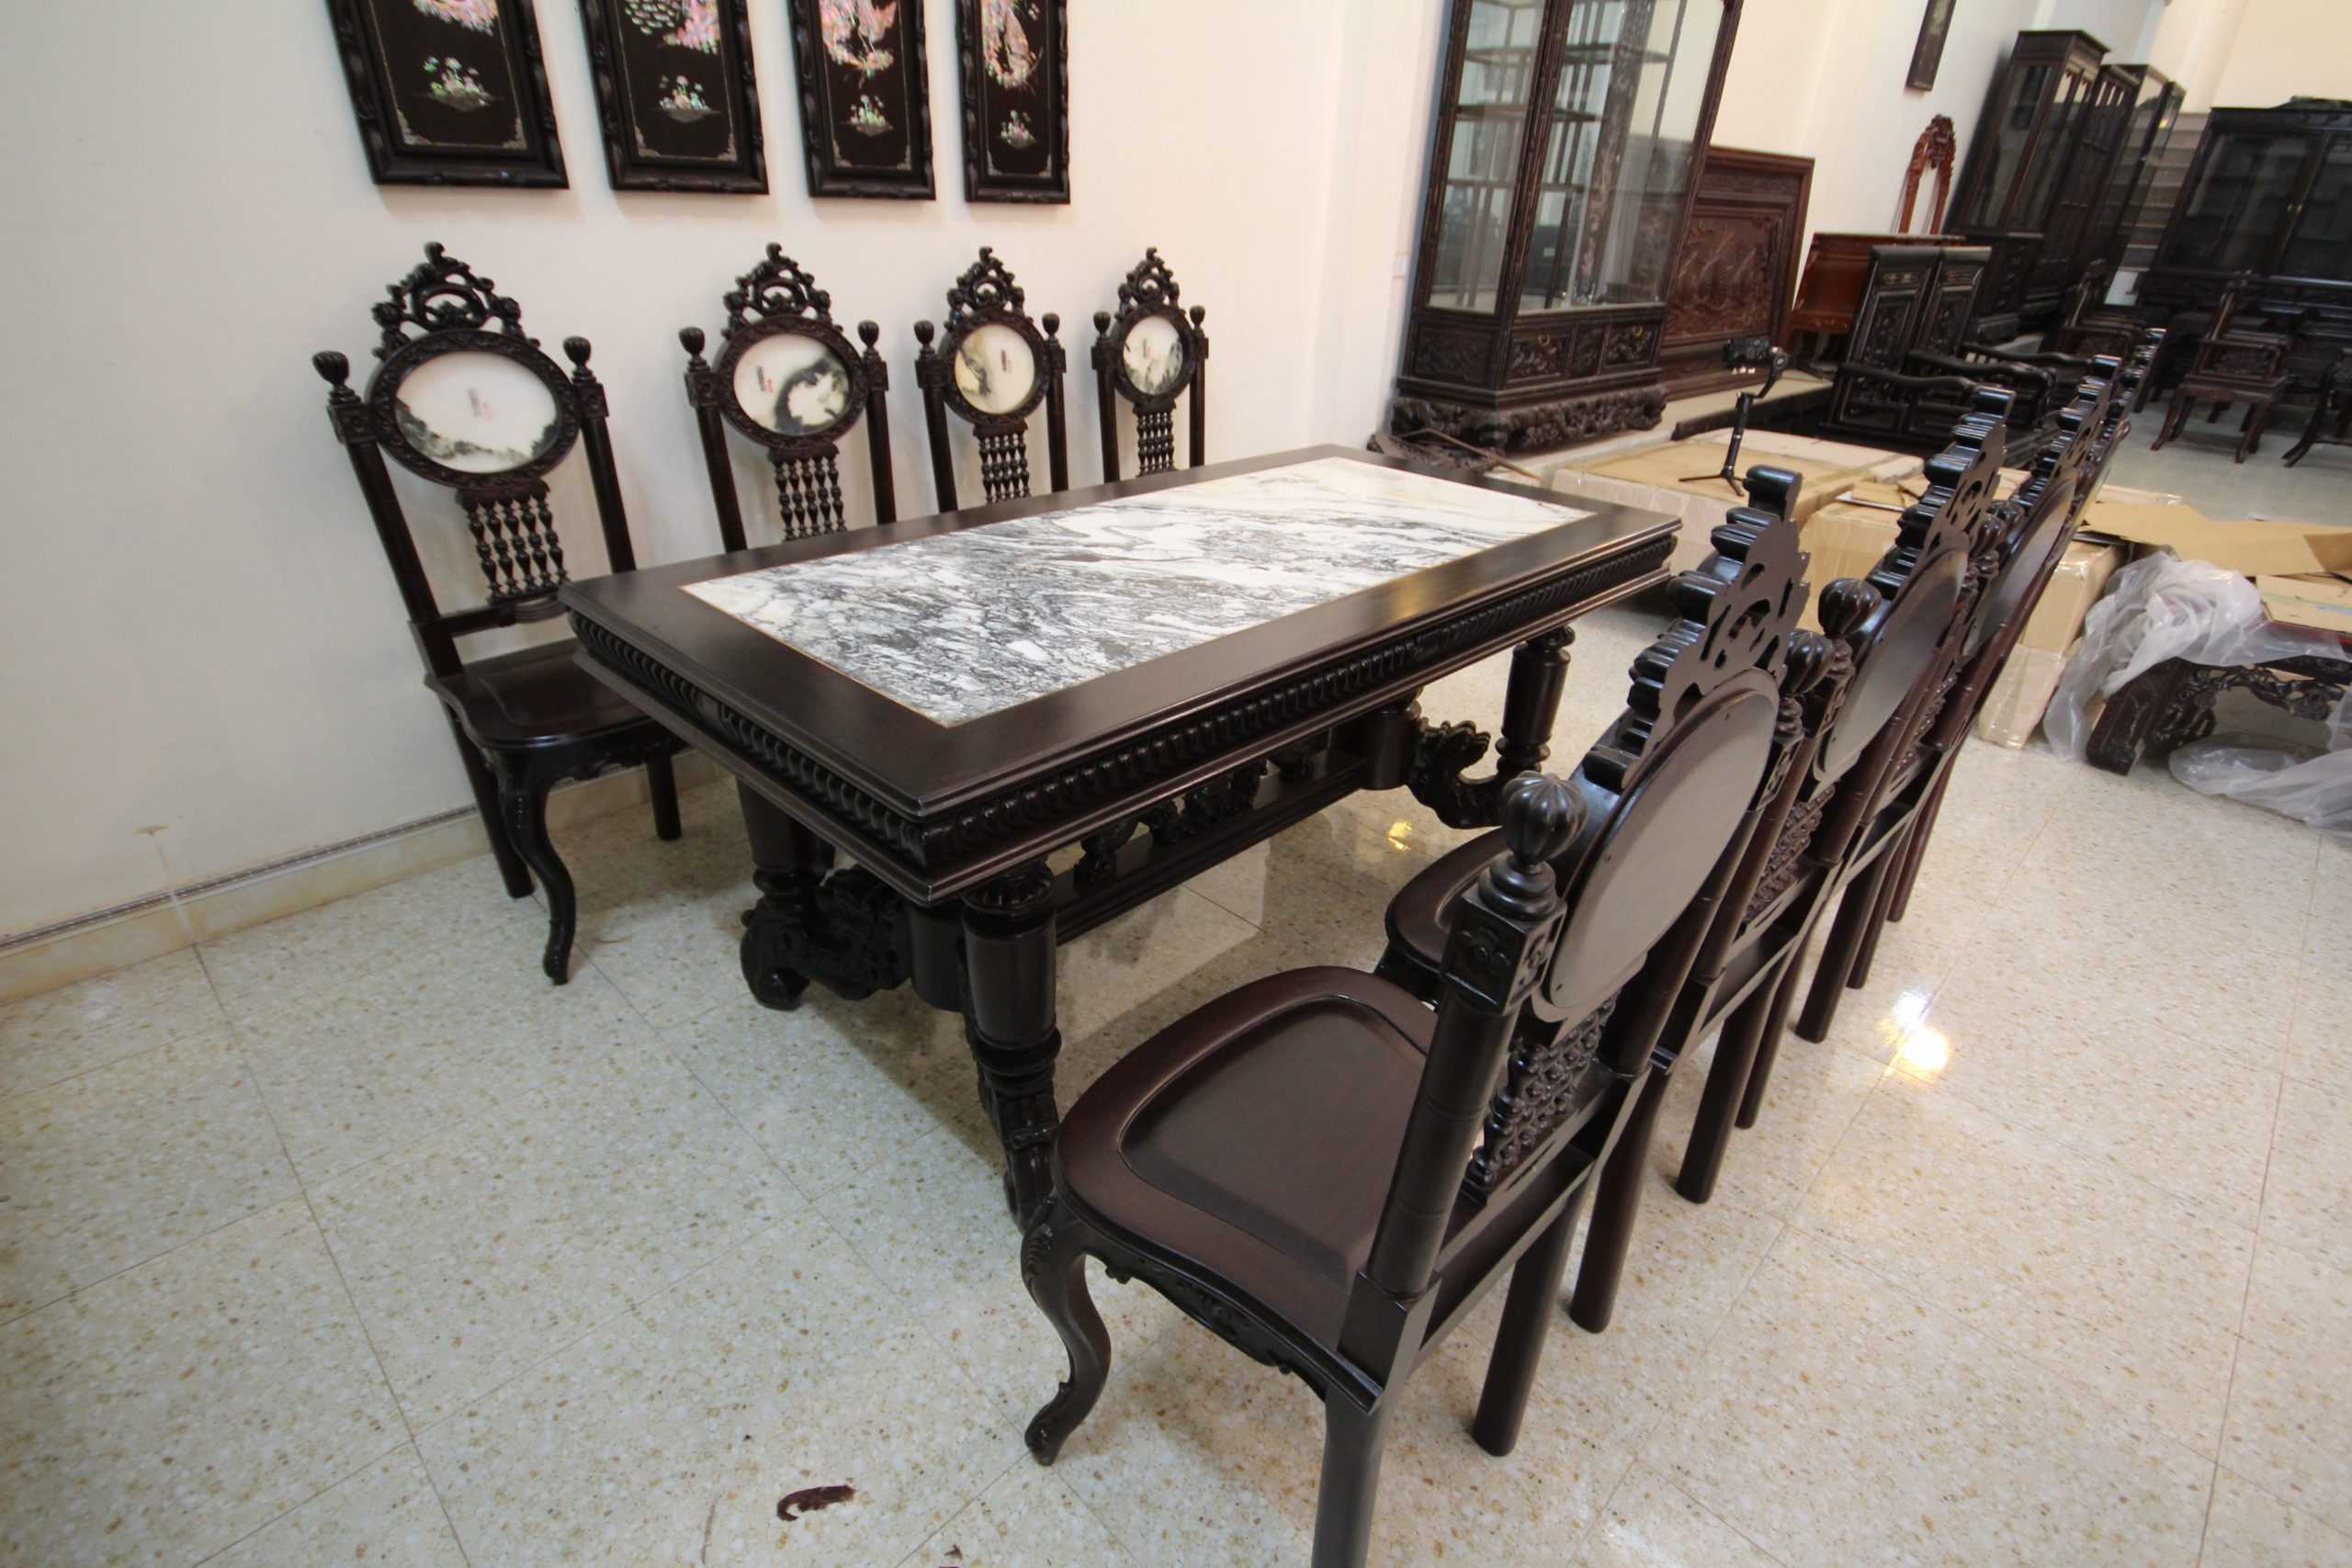 Tổng kho đồ gỗ nội thất: Bộ bàn ghế ăn gỗ gụ BGA27 là một trong những sản phẩm nổi bật của Tổng kho đồ gỗ nội thất